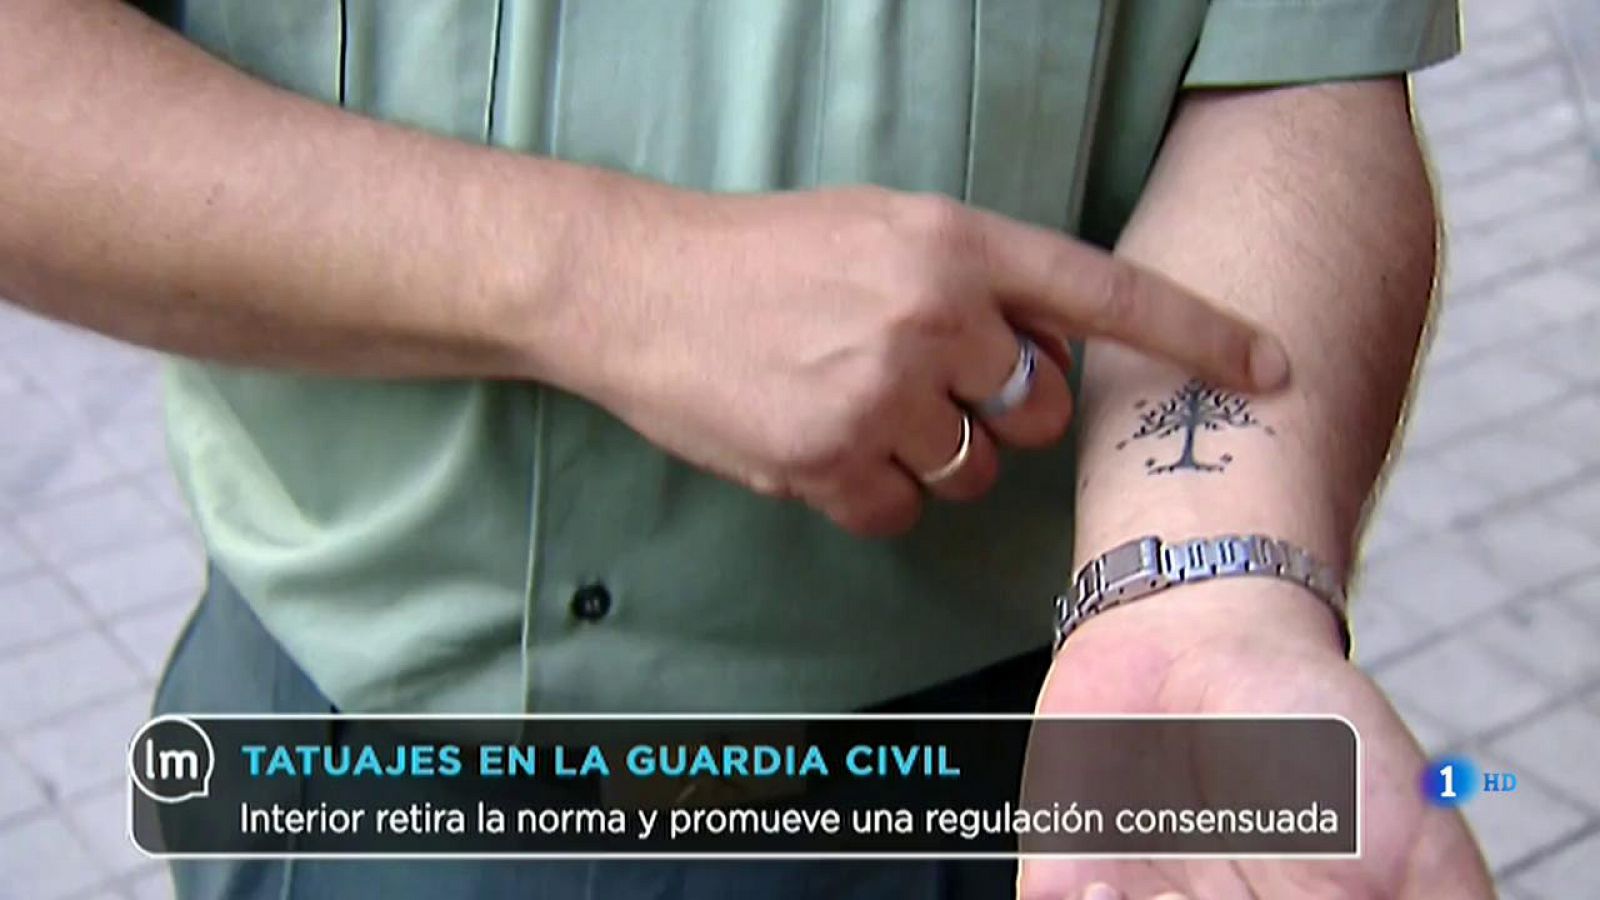 La Mañana - La Guardia Civil se opone a la nueva normativa sobre los tatuajes impuesta por Interior